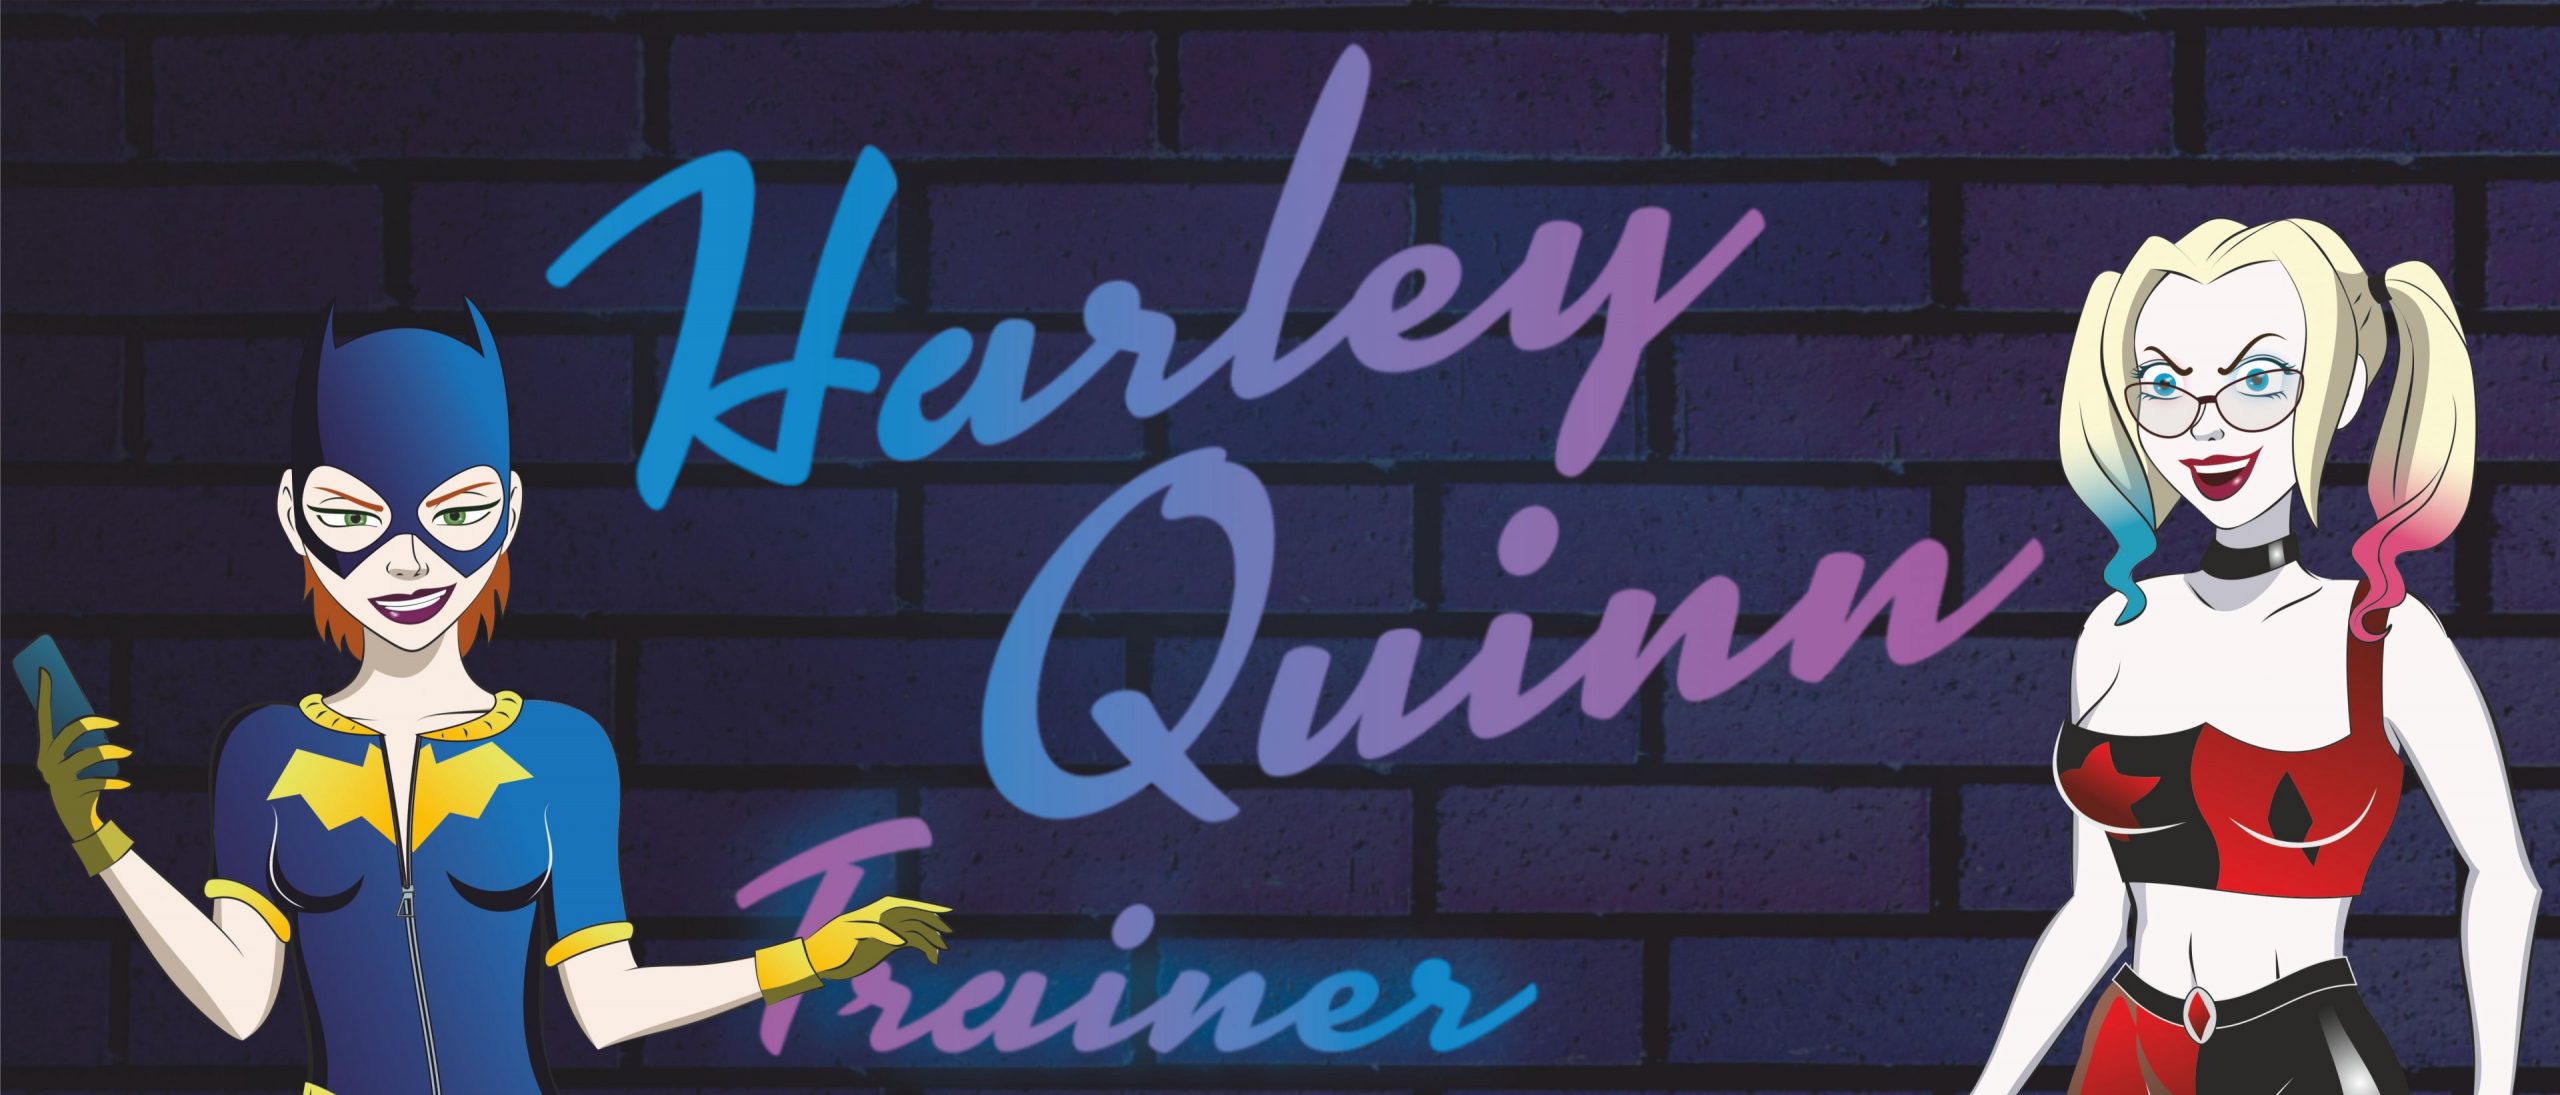 Harley quinn hentai games